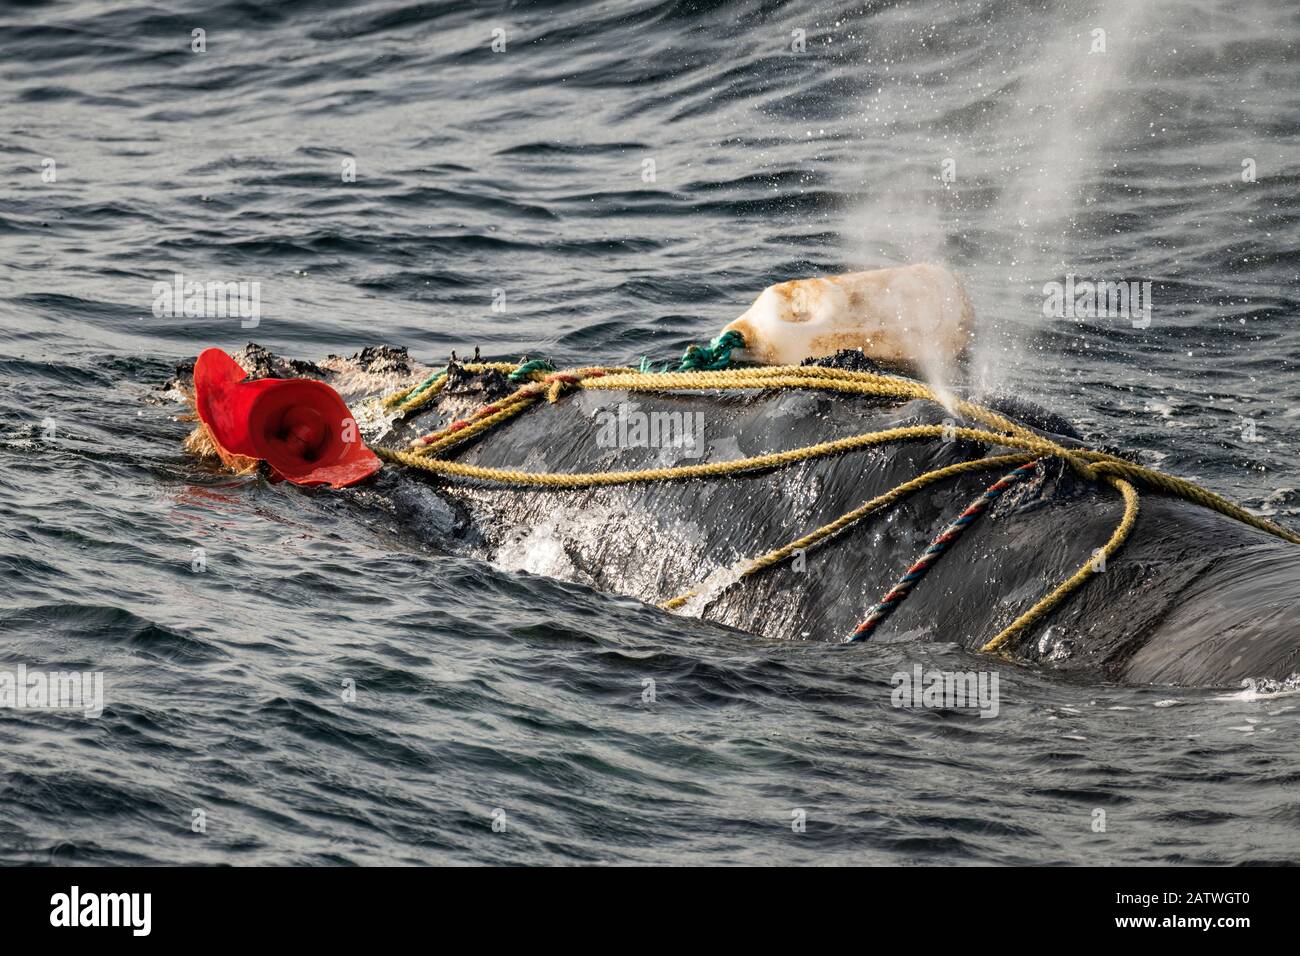 Des cordes de pêche enveloppent le trou de fuite d'une baleine noire de l'Atlantique Nord (Eubalaena glacialis) gravement enchevêtrée dans le golfe du Saint-Laurent, Canada. L'enchevêtrement des engins de pêche est une des principales causes de décès dans les baleines noires de l'Atlantique Nord. Statut de l'UICN : en voie de disparition. Juillet Banque D'Images